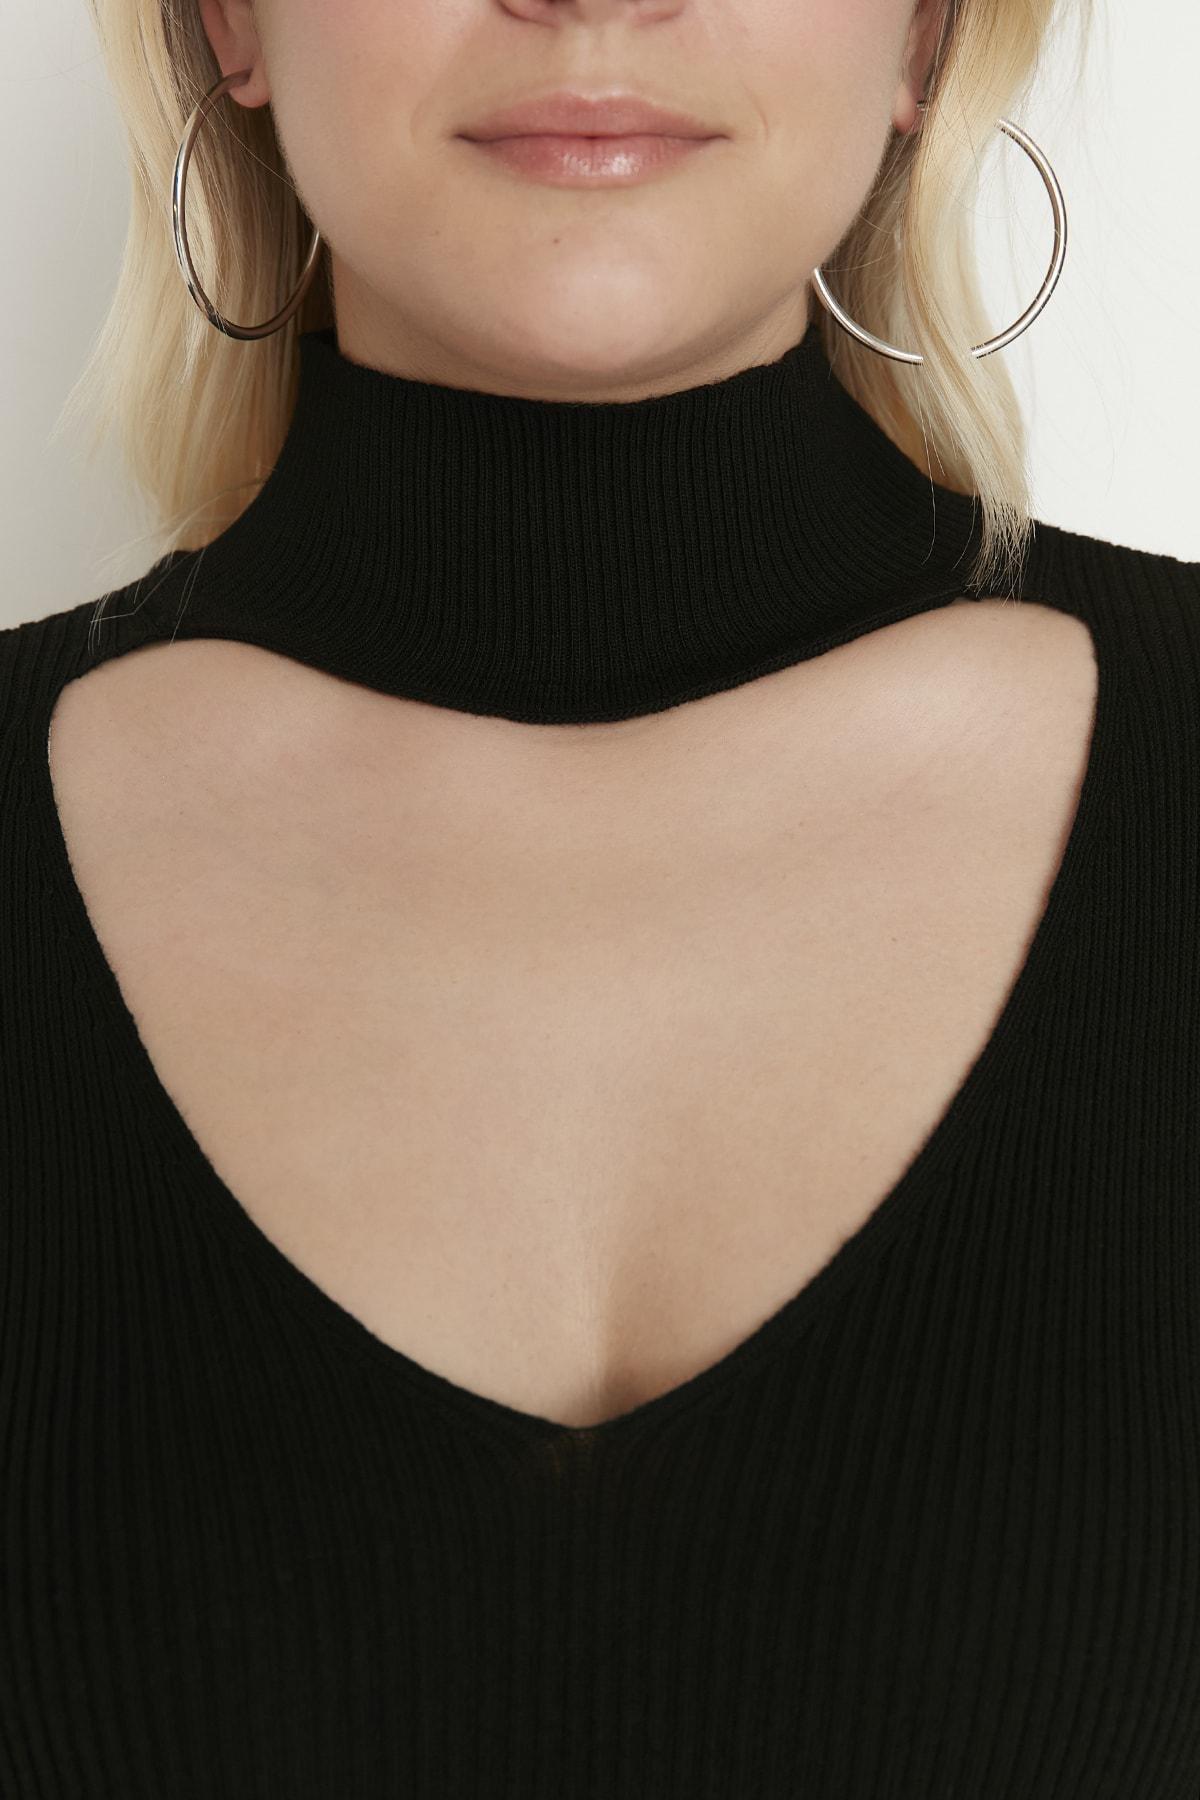 Trendyol - Black Crew Neck Plus Size Sweater